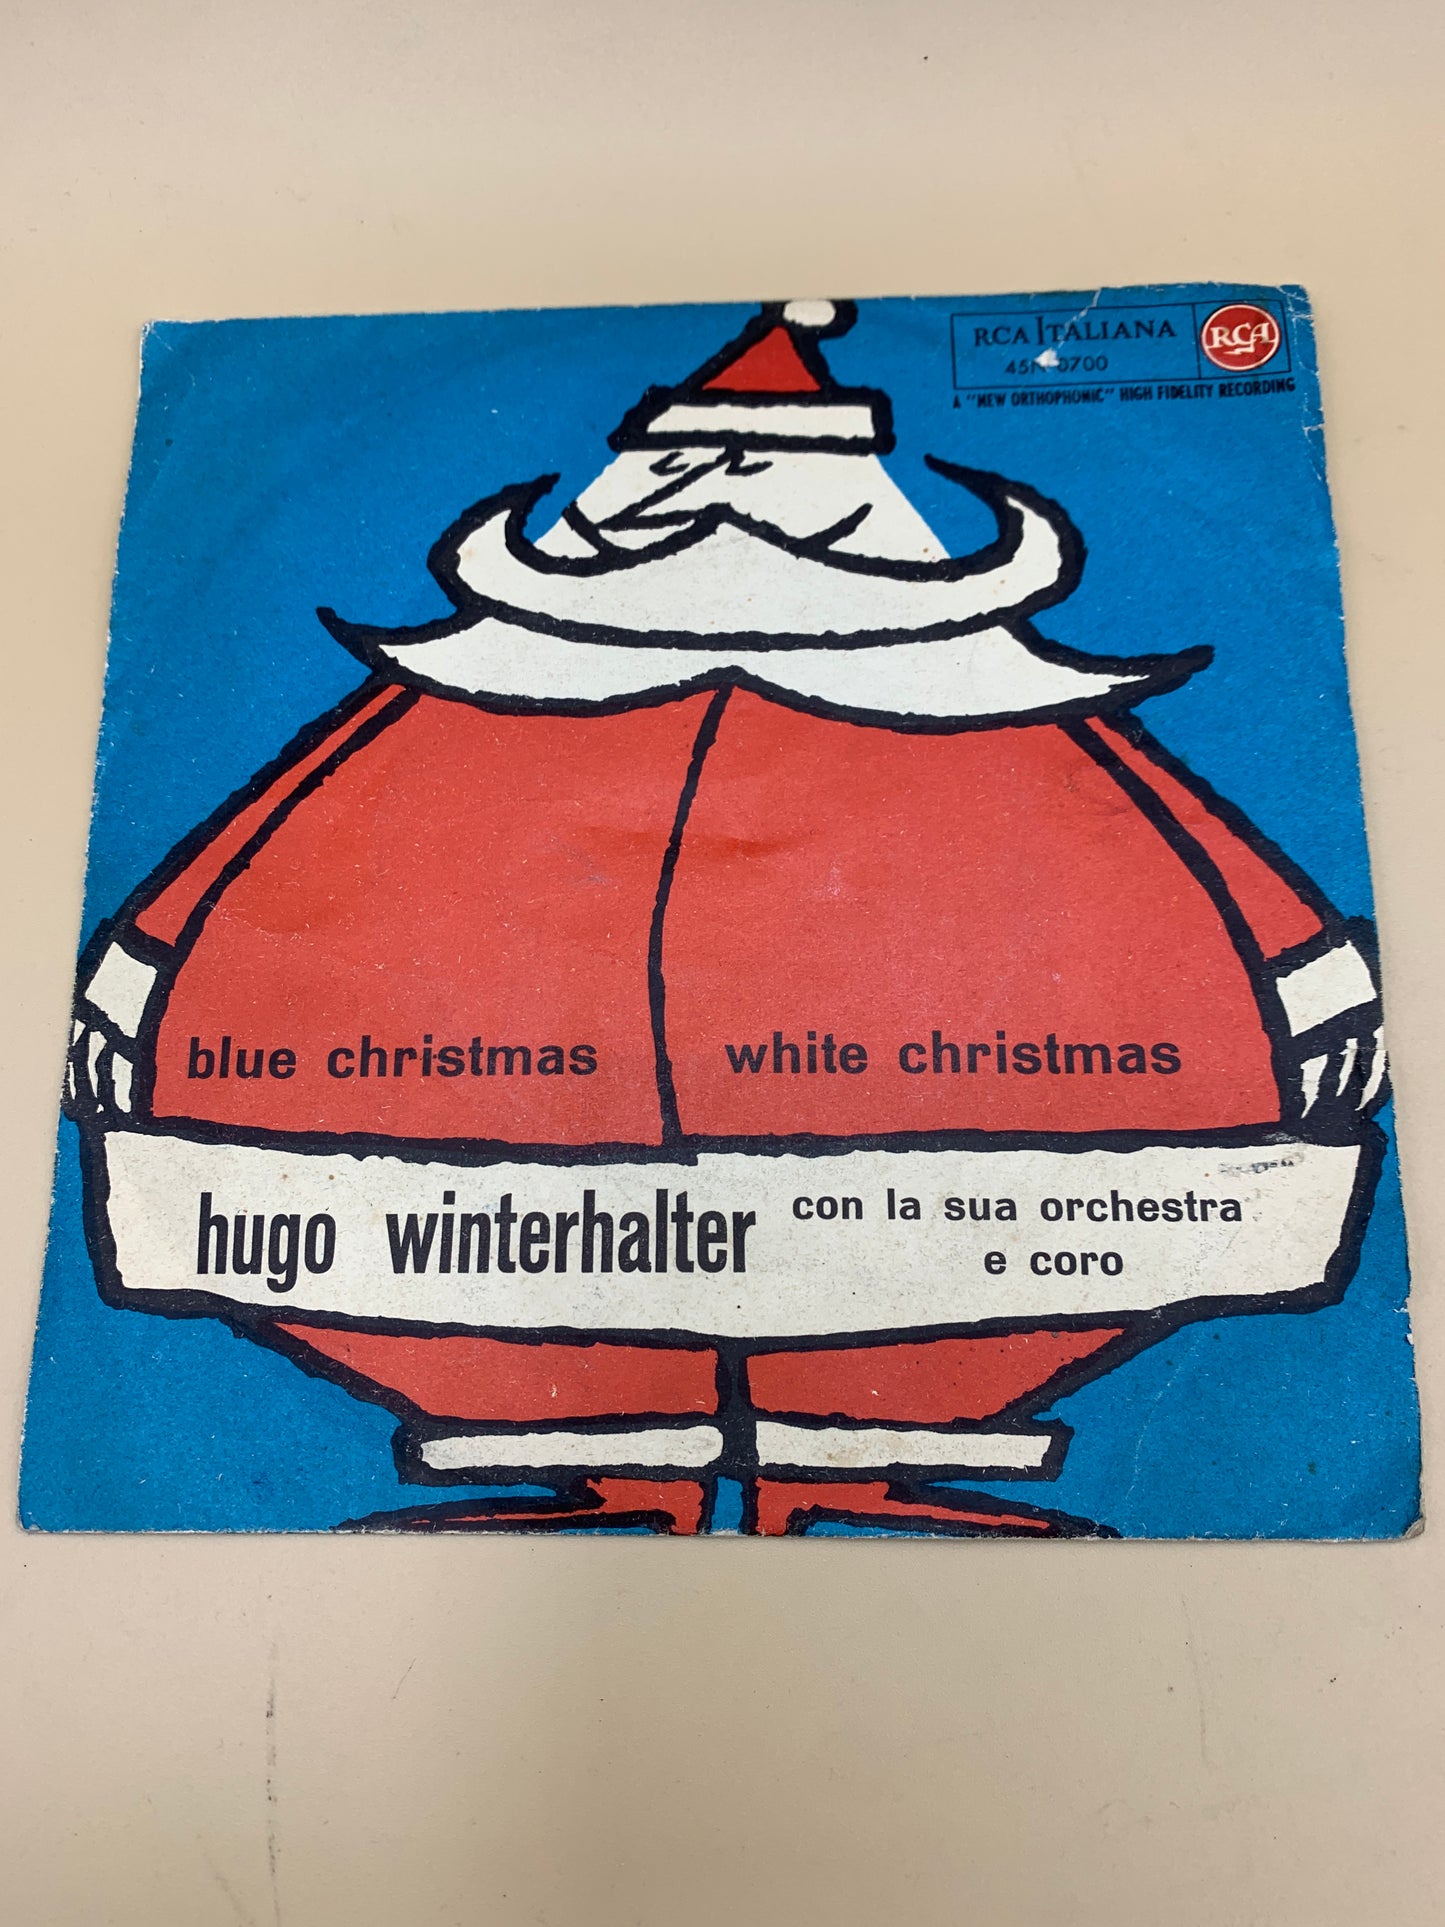 Hugo Winterhalter - Blue Christmas - disco vinile 45 giri